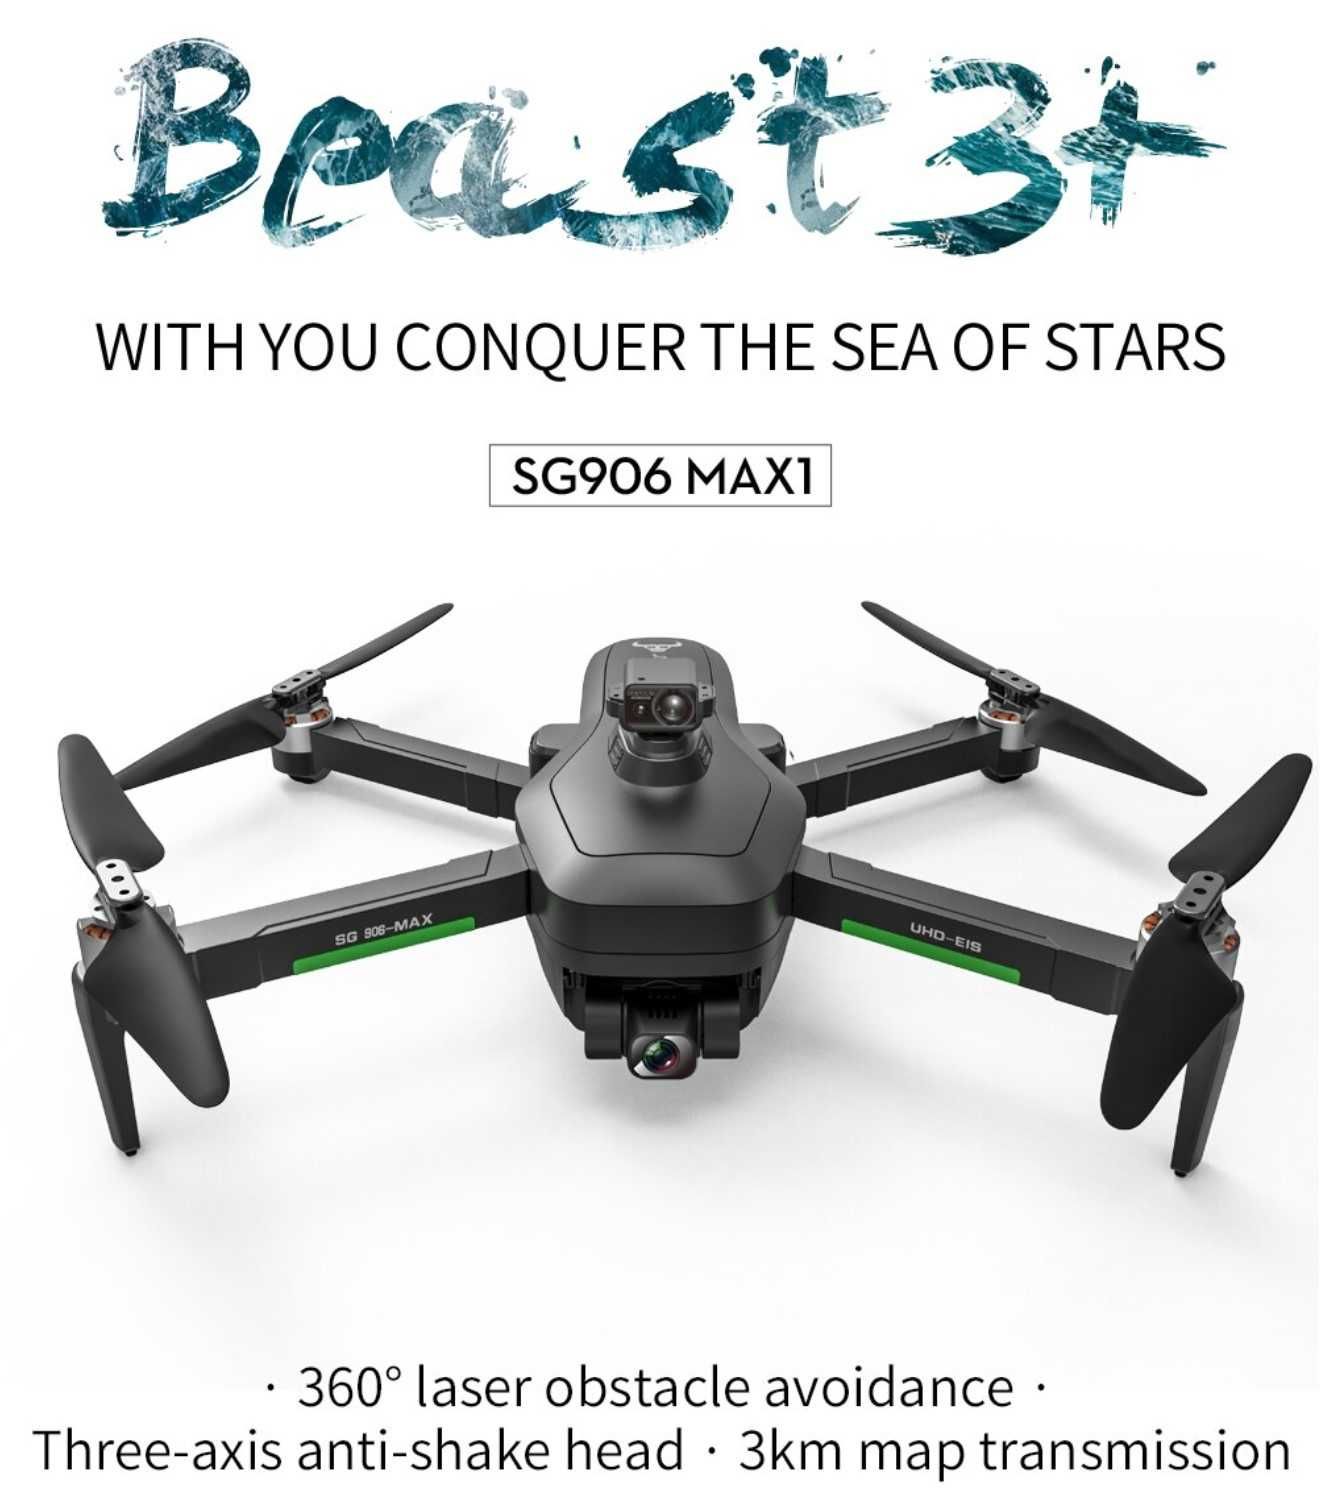 Drone Sg906 max1/pro2